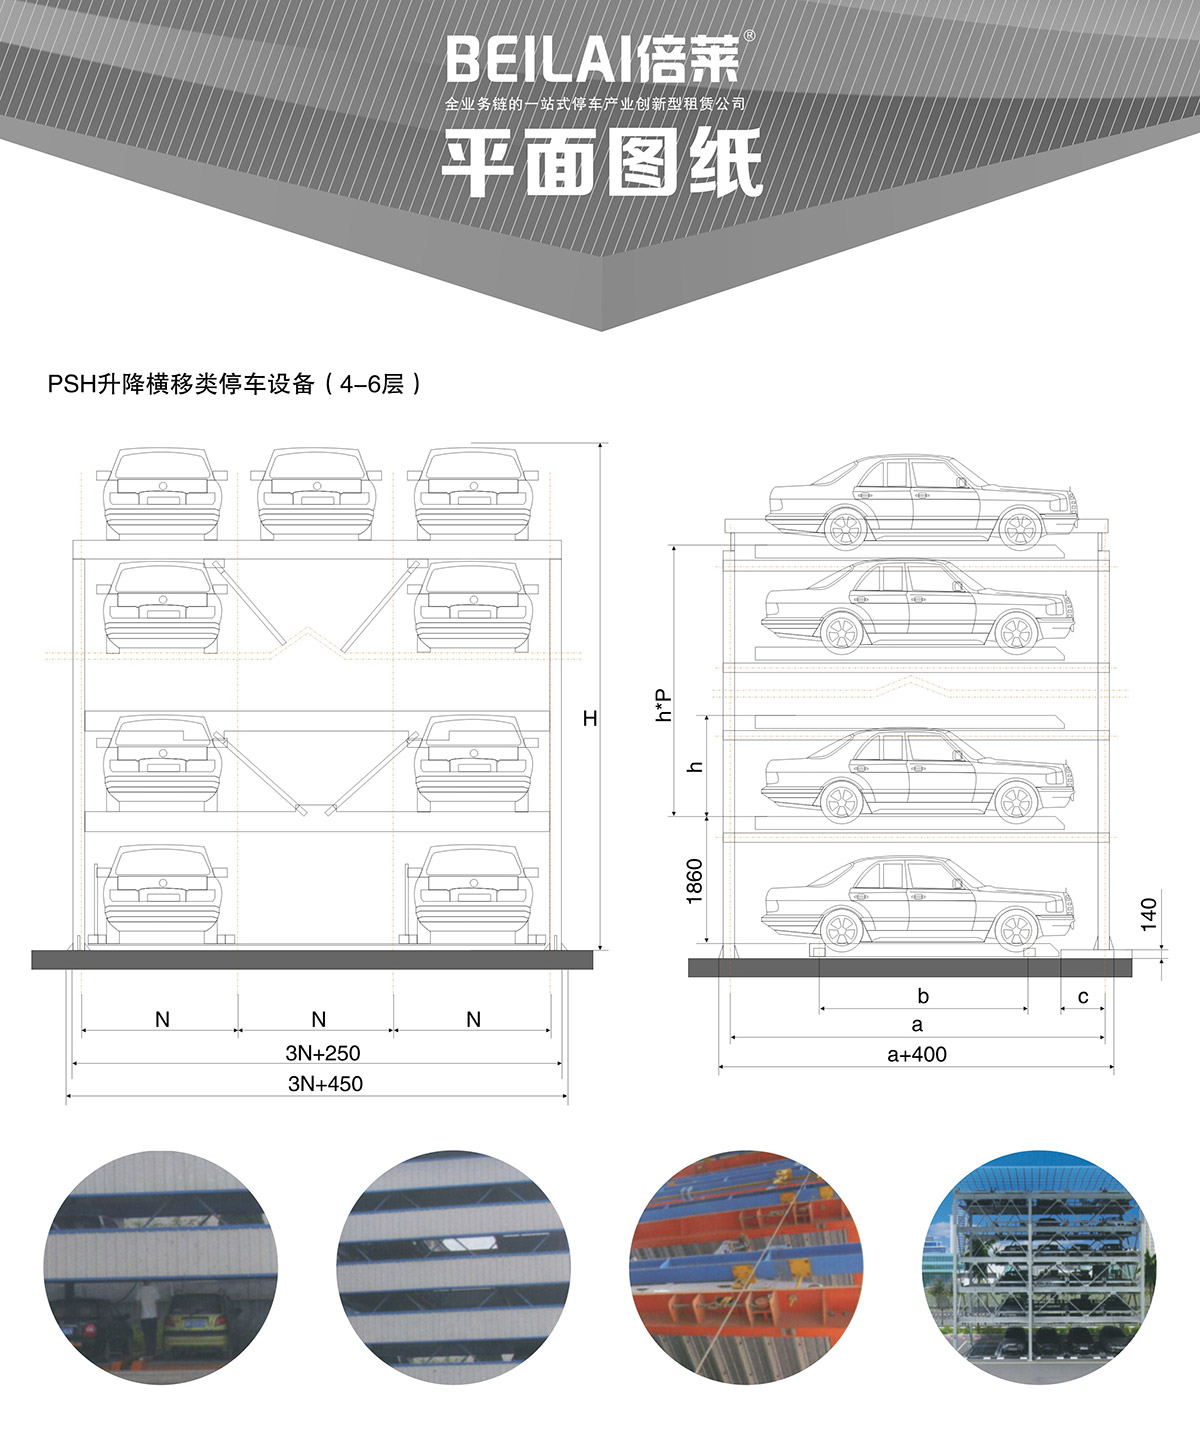 重庆四至六层PSH4-6升降横移类机械式立体停车设备平面图纸.jpg